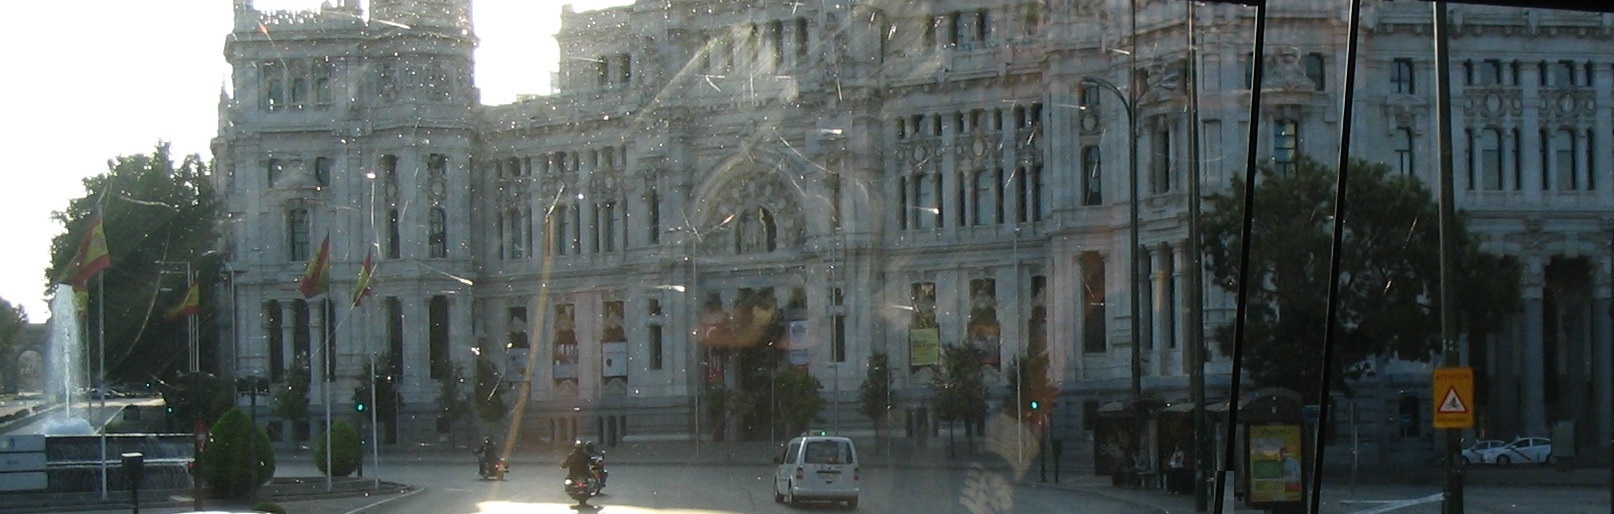 33 -Palazzo de Cibeles - (Attualmente Palazzo del Comune)